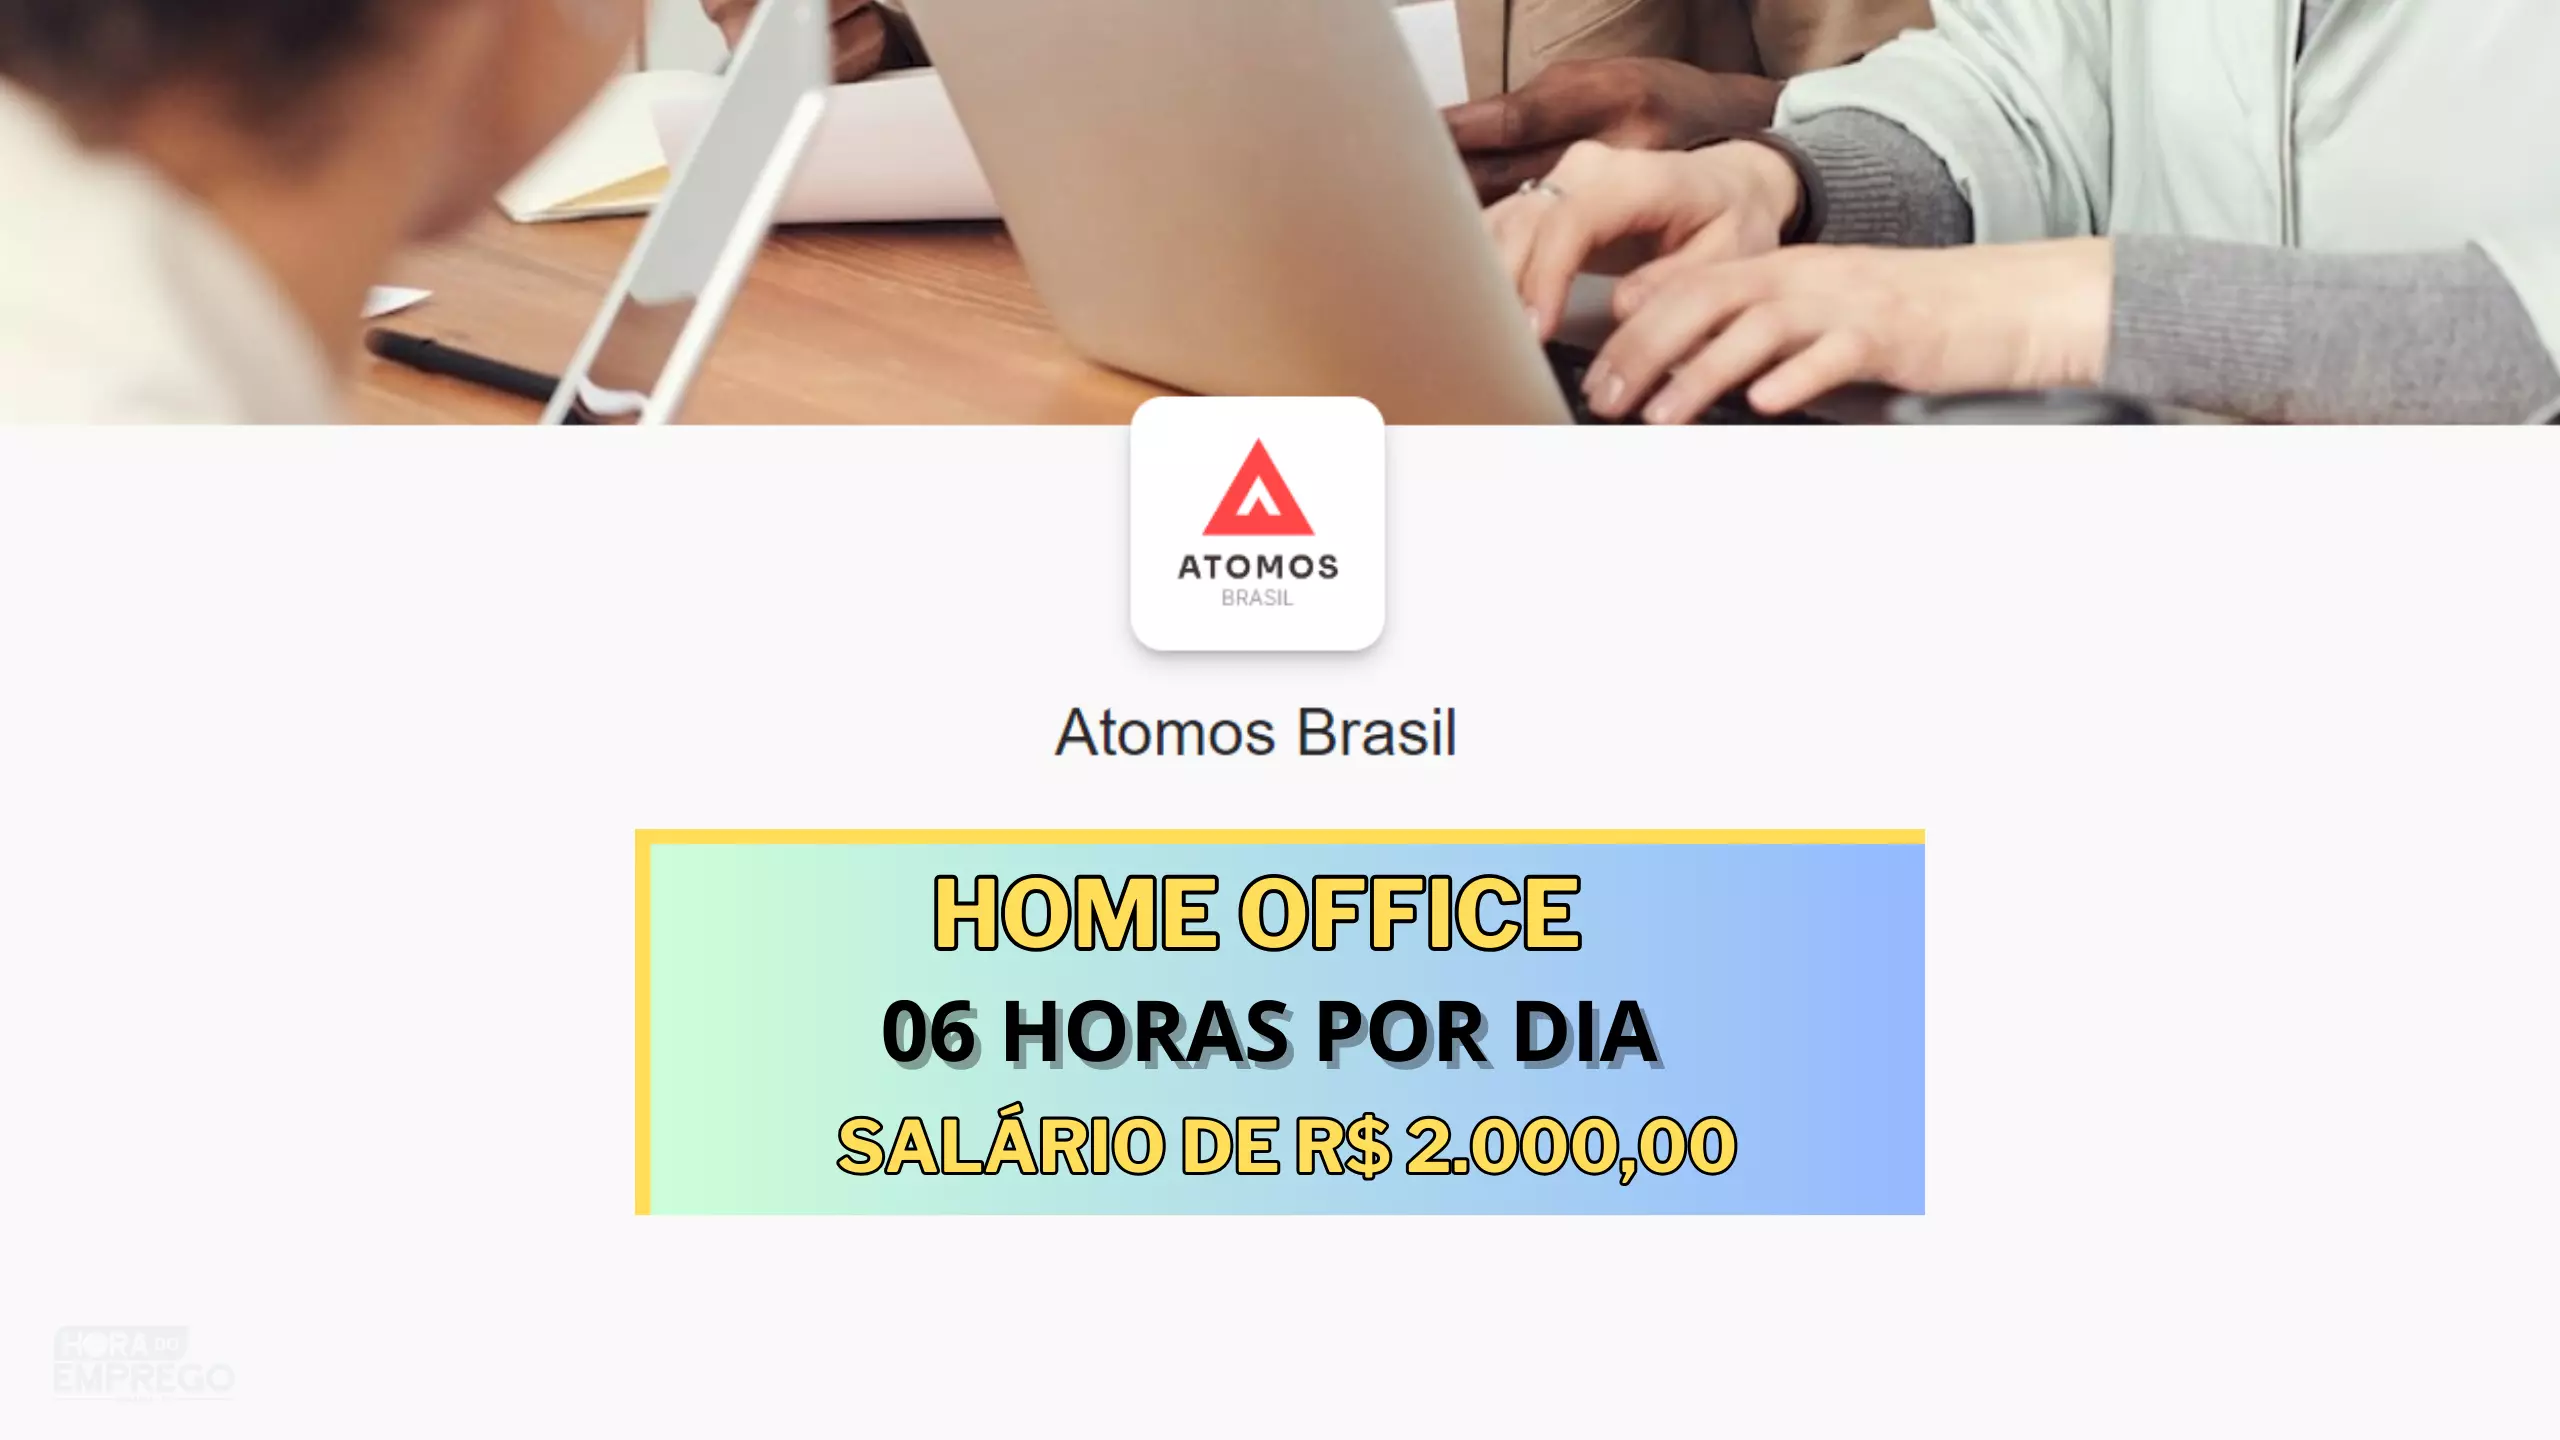 Atomos Brasil abre vaga HOME OFFICE para Atendimento ao Cliente Jr (Tarde) com salário de R$ 2.000,00